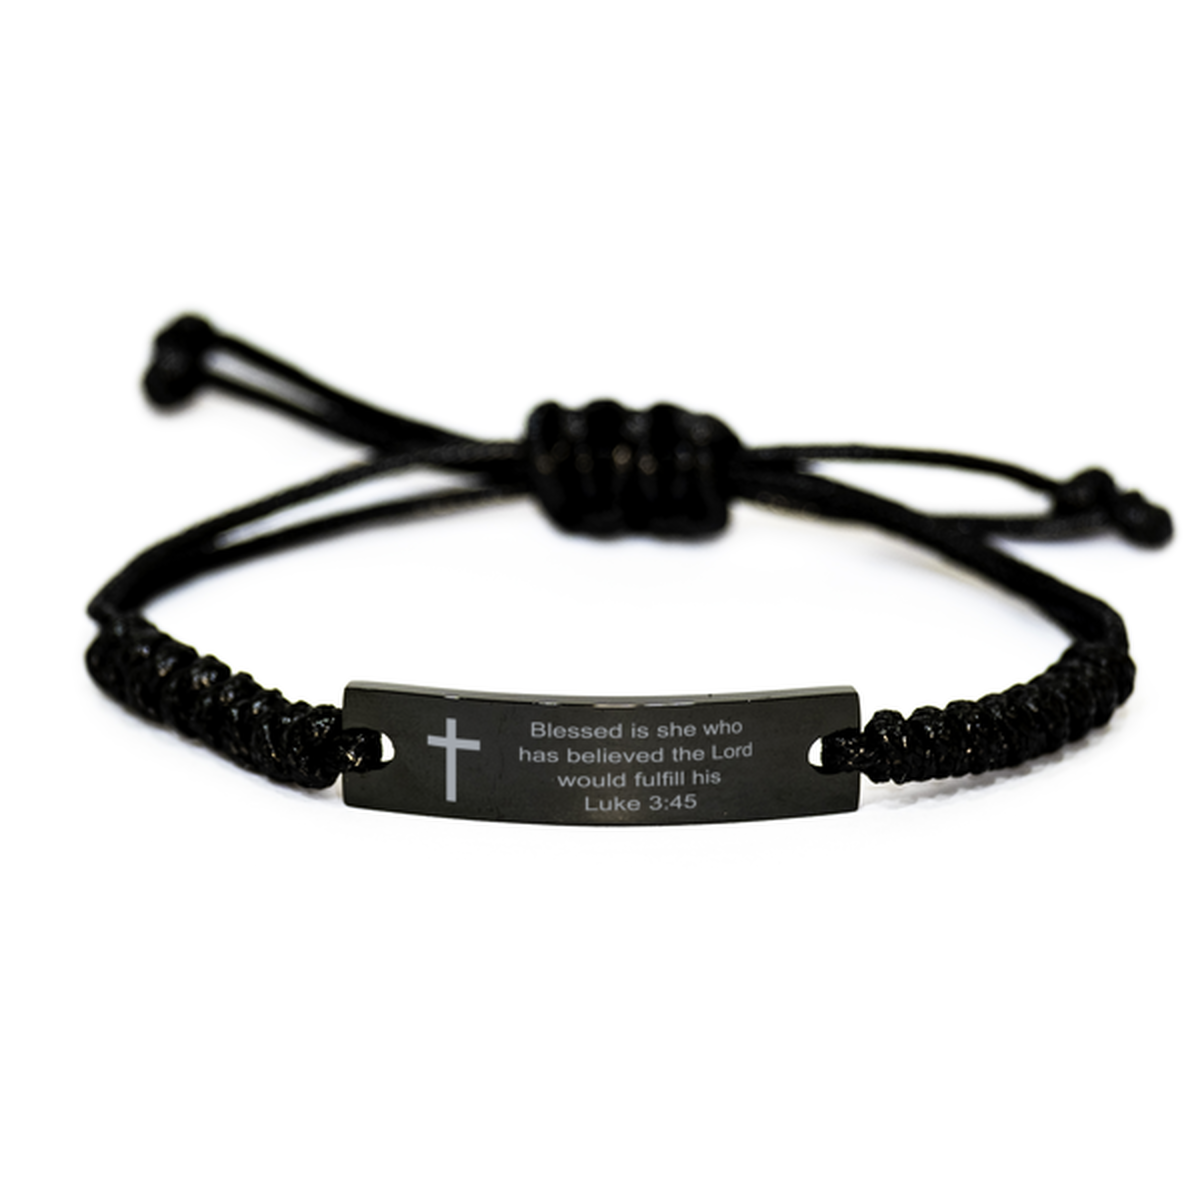 Luke 3 45 Bracelet, Bible Verse Bracelet, Christian Gift for Men Women, Black Braided Rope Bracelet, Birthday, Christmas Gift.